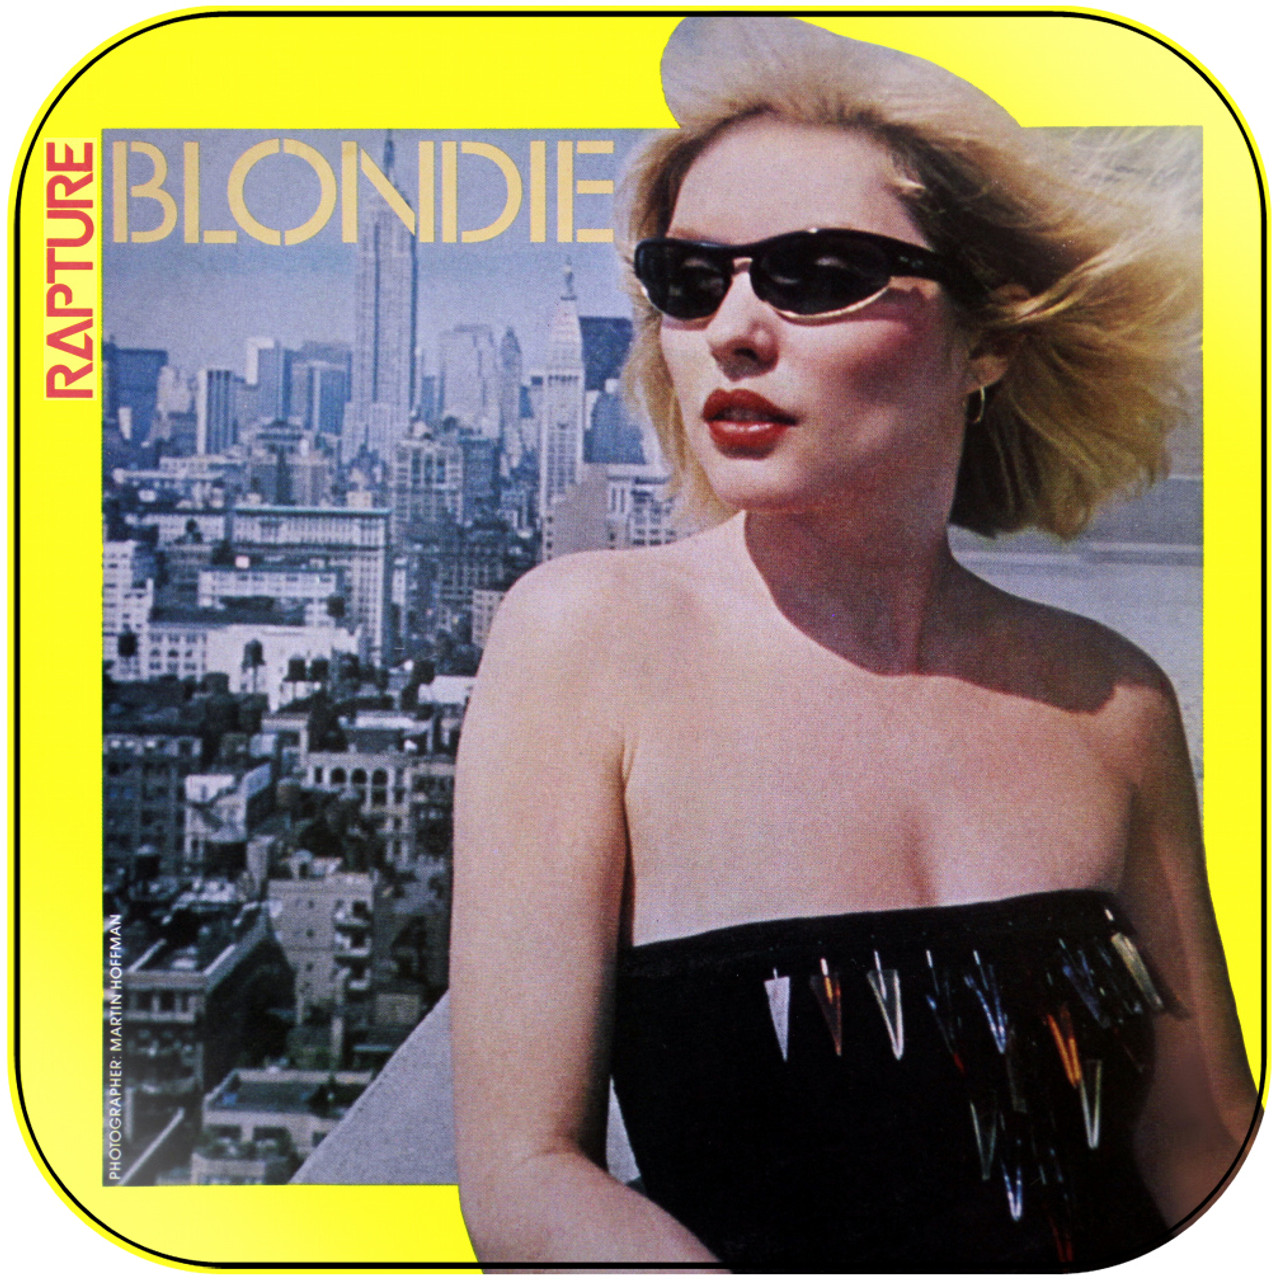 Blondie Rip Her To Shreds Album Cover Sticker Album Cover Sticker